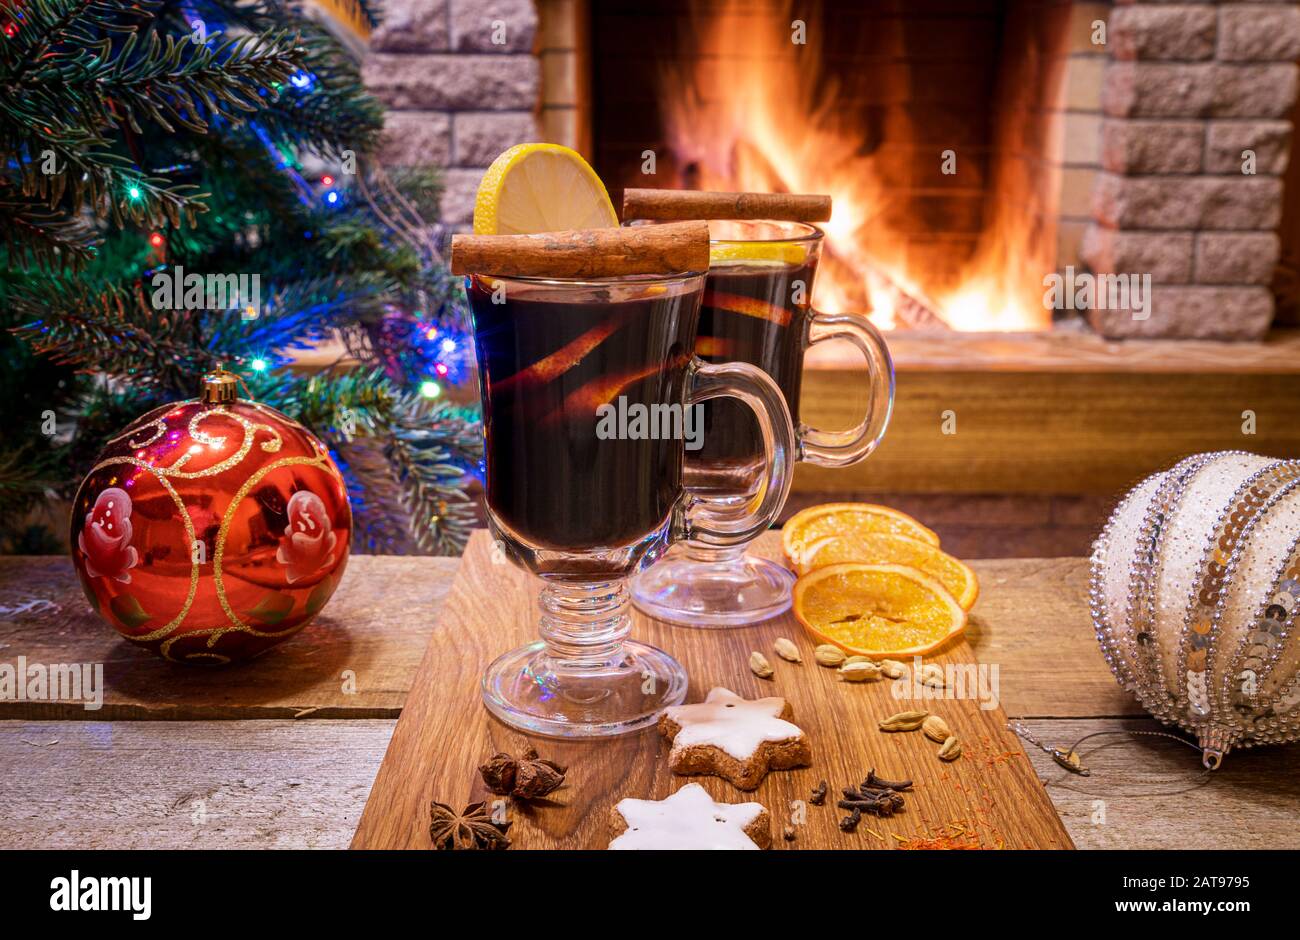 Gemütliche Weihnachts-Szene mit zwei Gläsern Glühwein auf einem Holzbrett vor dem brennenden Kamin. Stockfoto